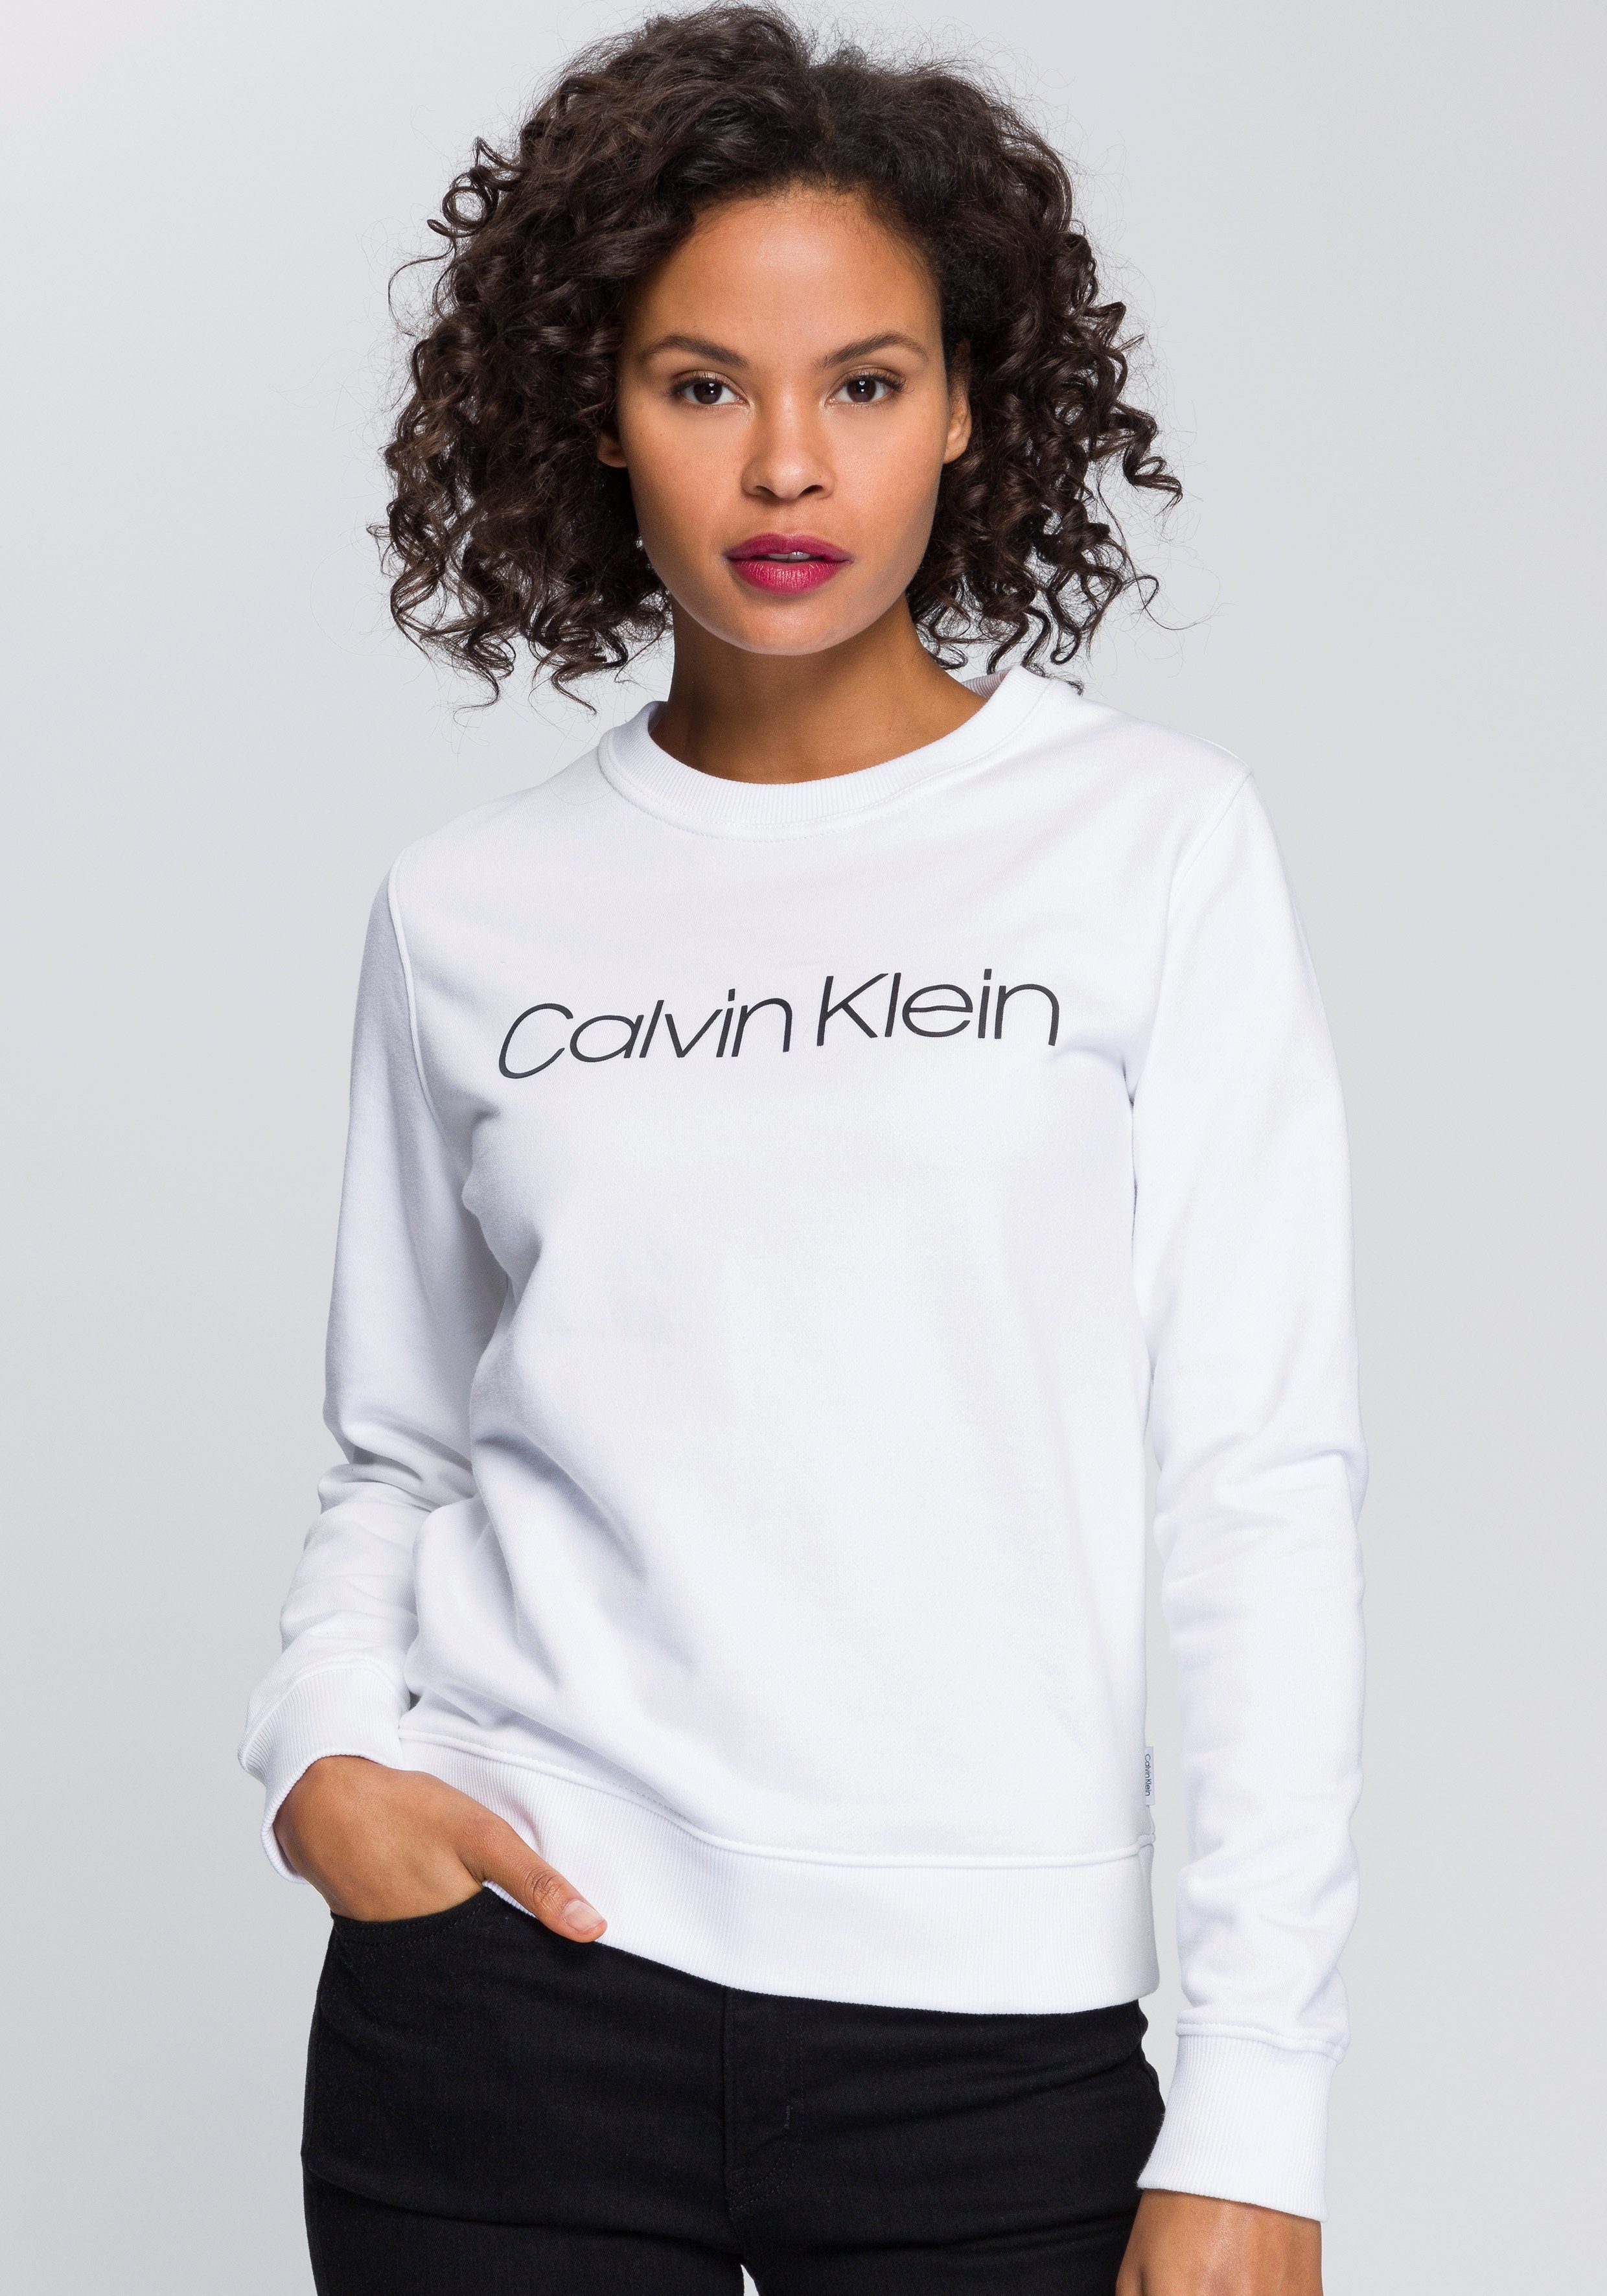 Calvin Klein Sweatshirt »LS CORE LOGO HWK« mit Calvin Klein Logo-Schriftzug  online kaufen | OTTO